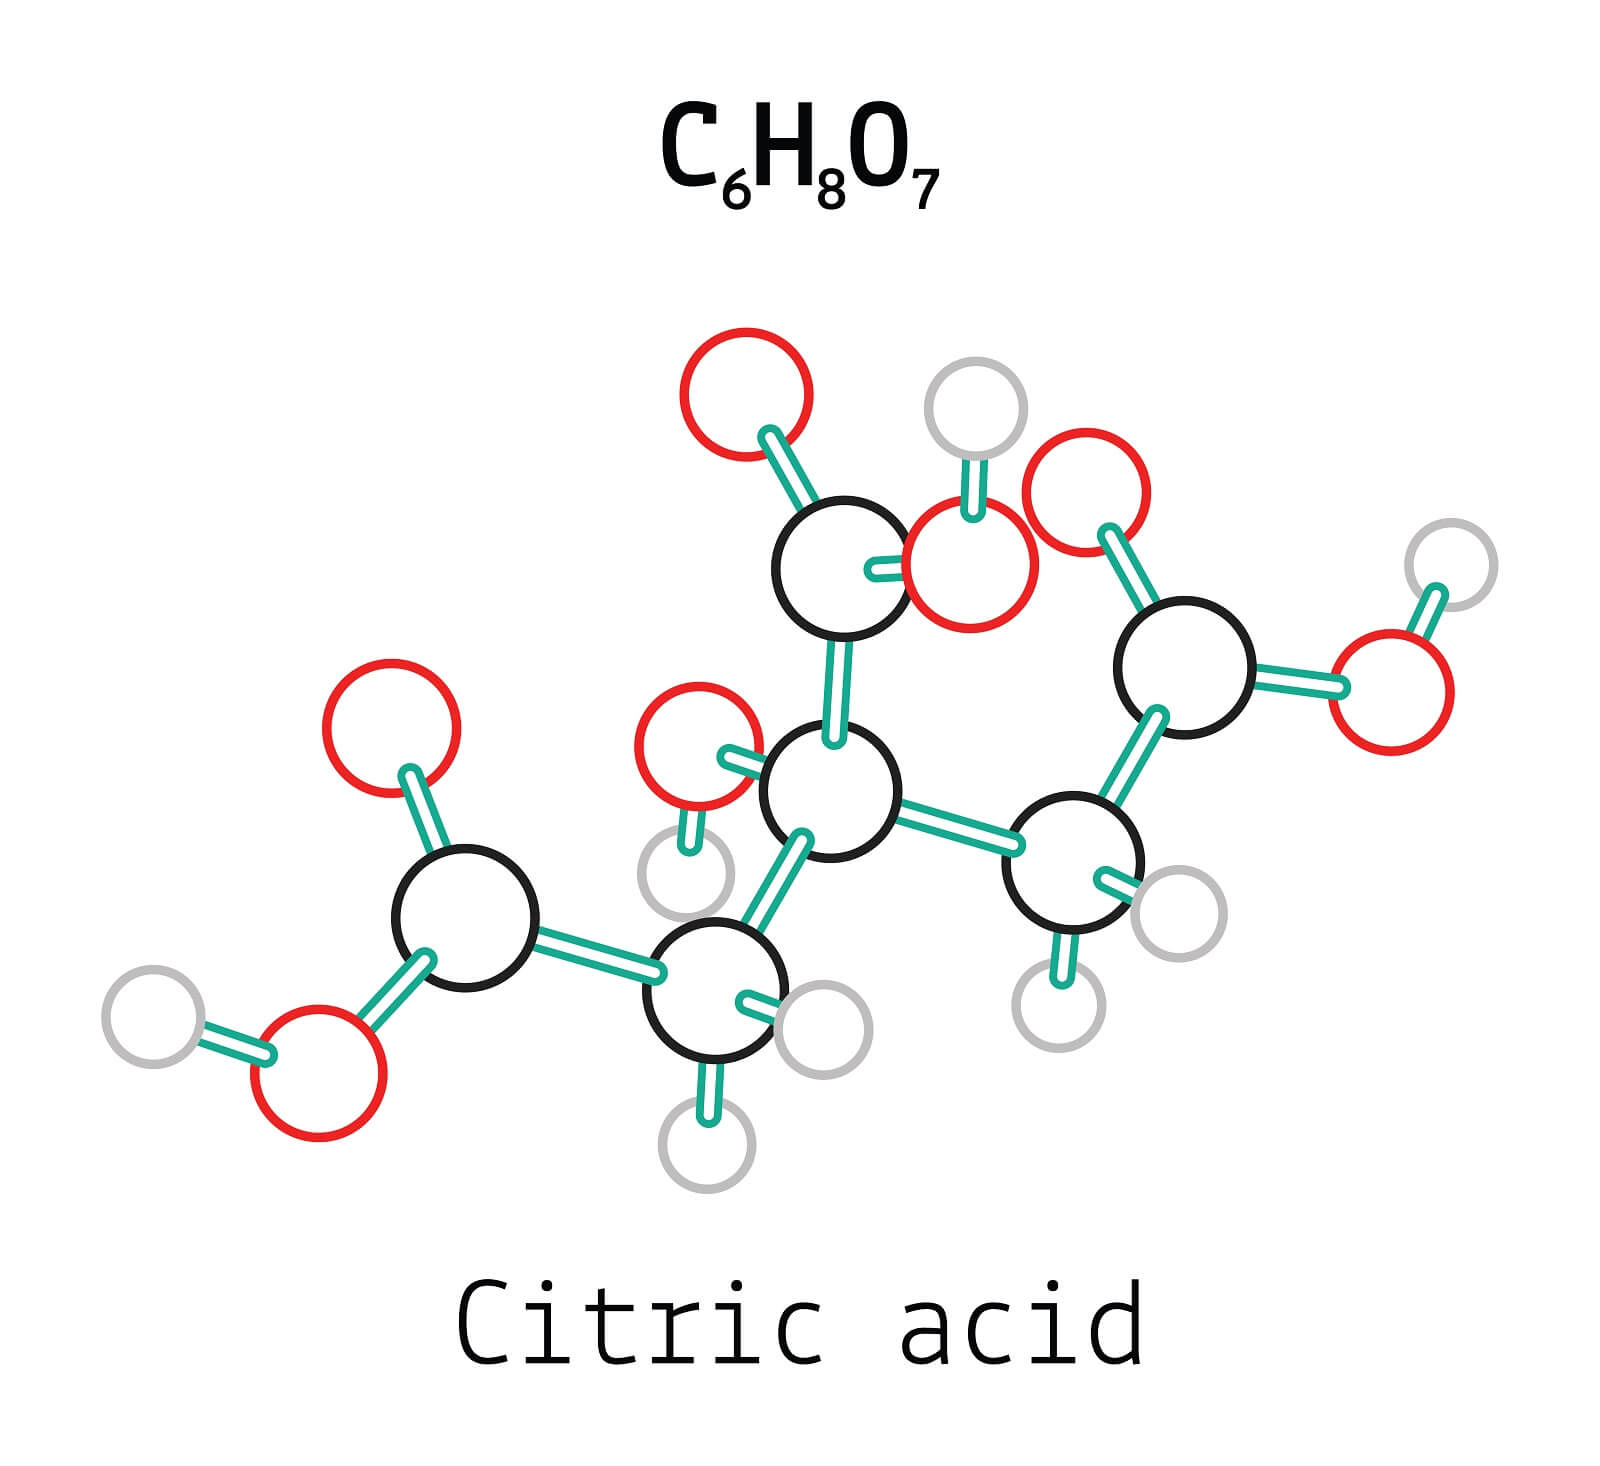 C6H8O7 Citric acid molecule